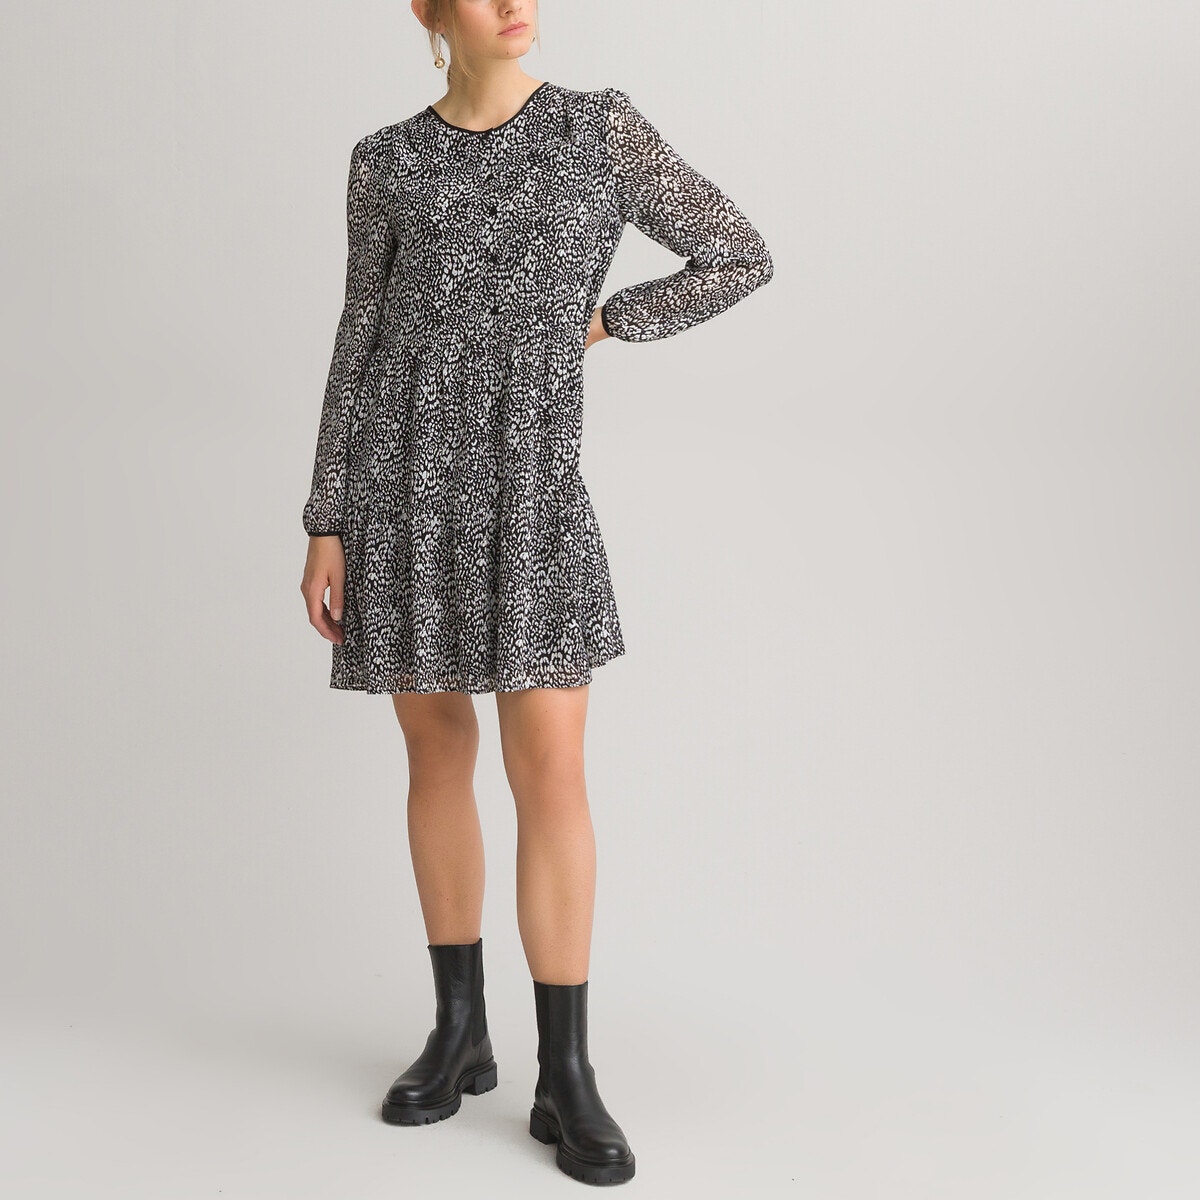 ΓΥΝΑΙΚΑ | Φορέματα | Μακριά ή 3/4 μανίκια Μακρυμάνικο κοντό φόρεμα με εμπριμέ μοτίβο